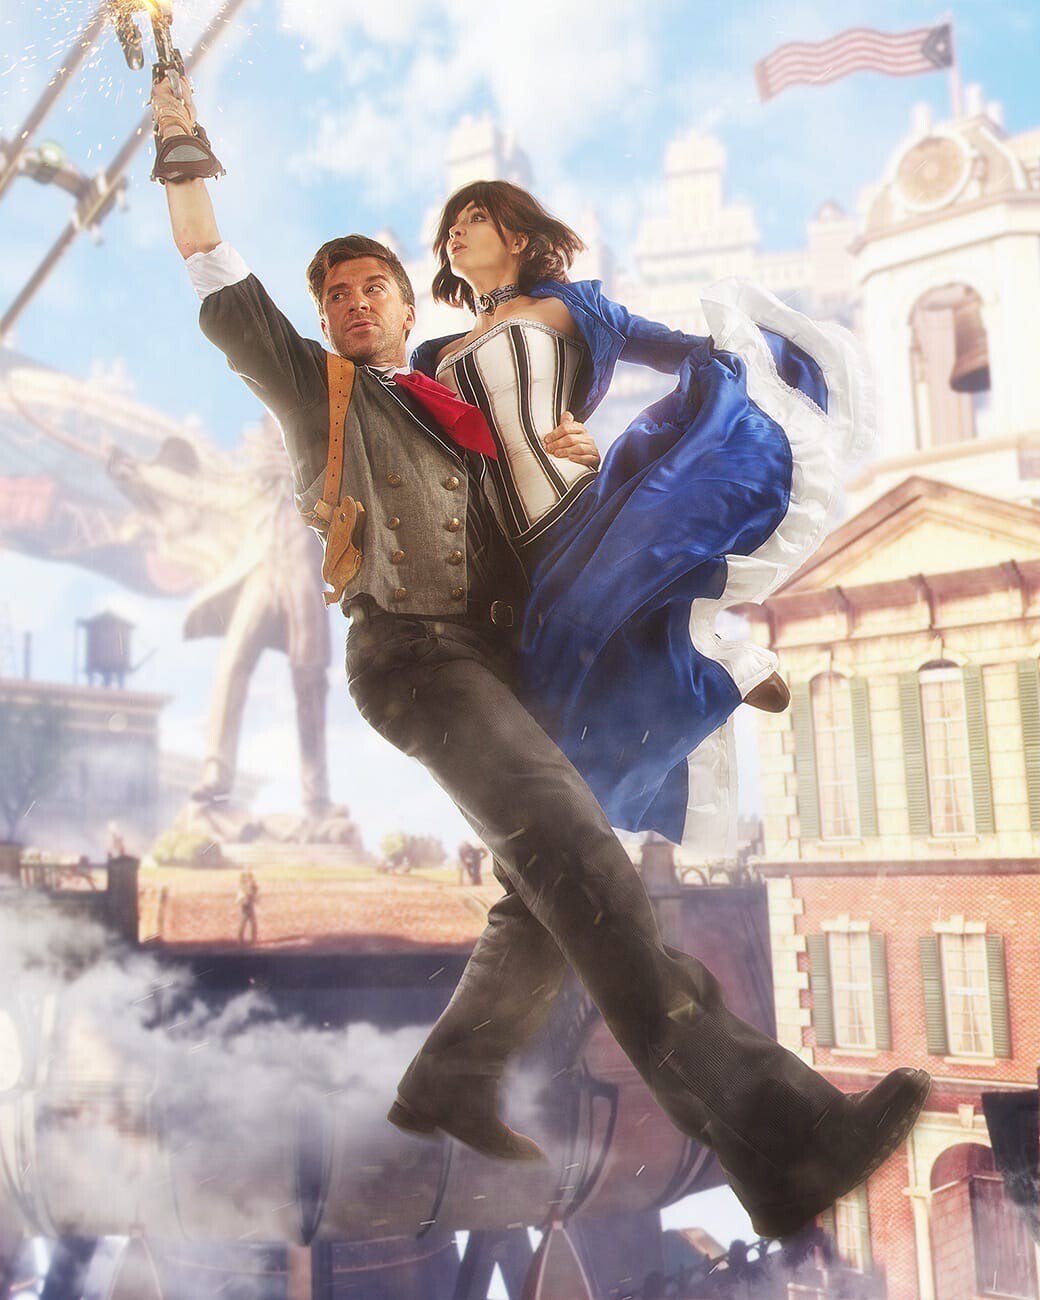 BioShock Infinite mostra a origem dos protagonistas Booker e Elizabeth